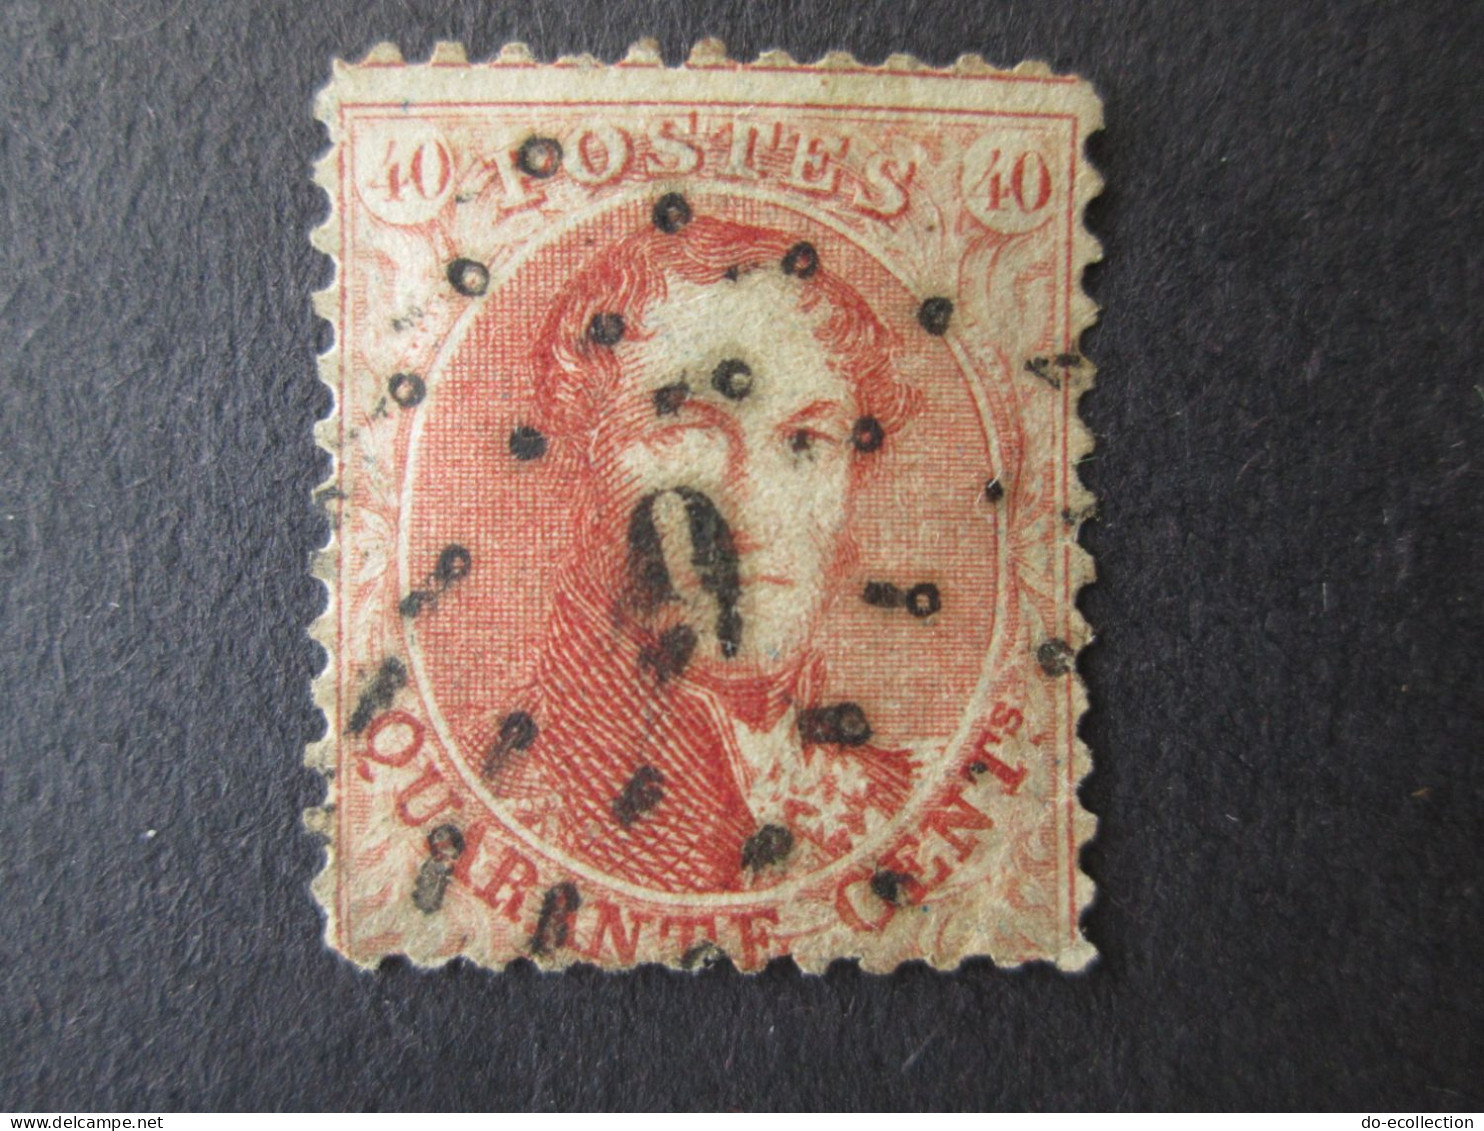 BELGIQUE 1863 lot de 4 timbres 10c 20c 40c perf 12 1/2 Leopold I dont oblitération 4/9 Belgie Belgium timbre stamps